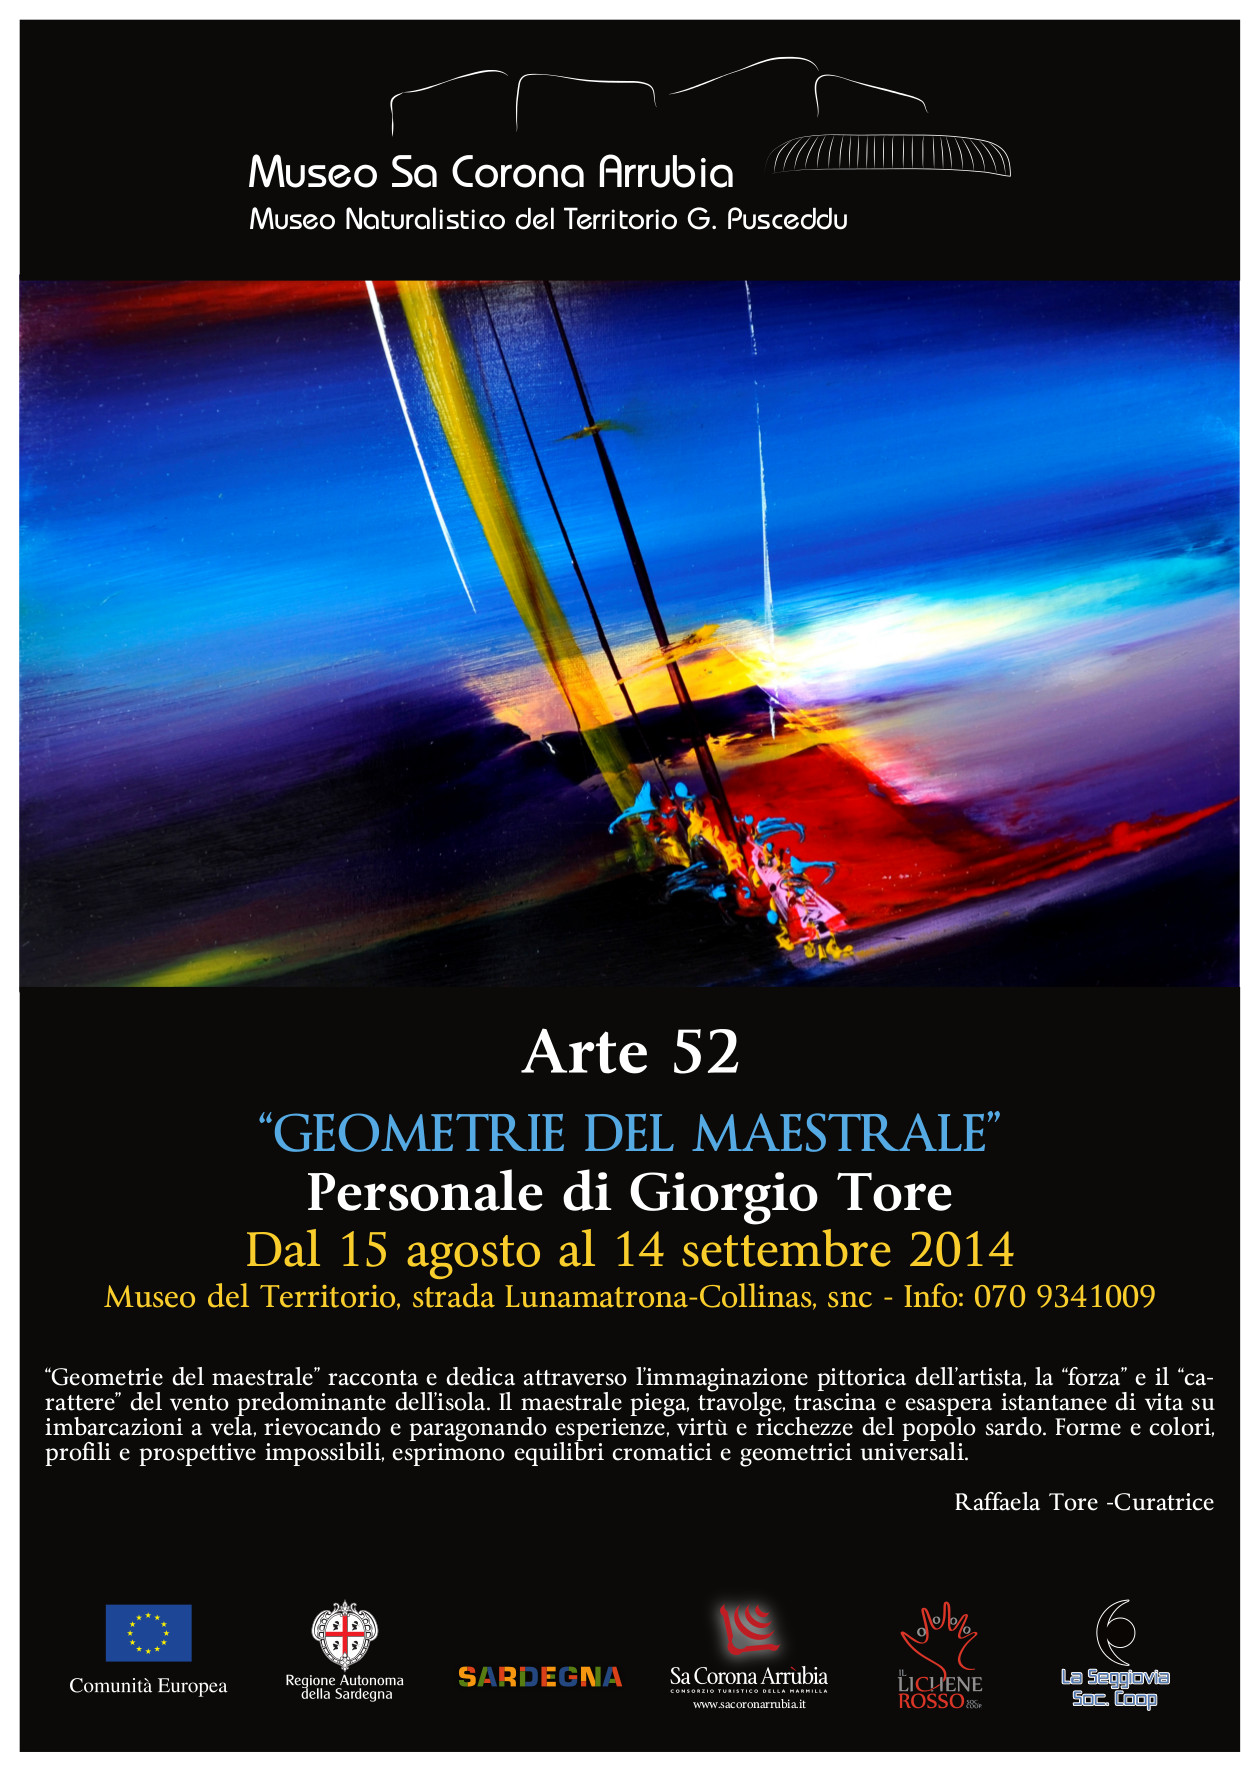 Mostra pittorica dell'artista Giorgio Tore Museo Sa Corona Arrubia dal 15 agosto al 14 settembre 2014. 